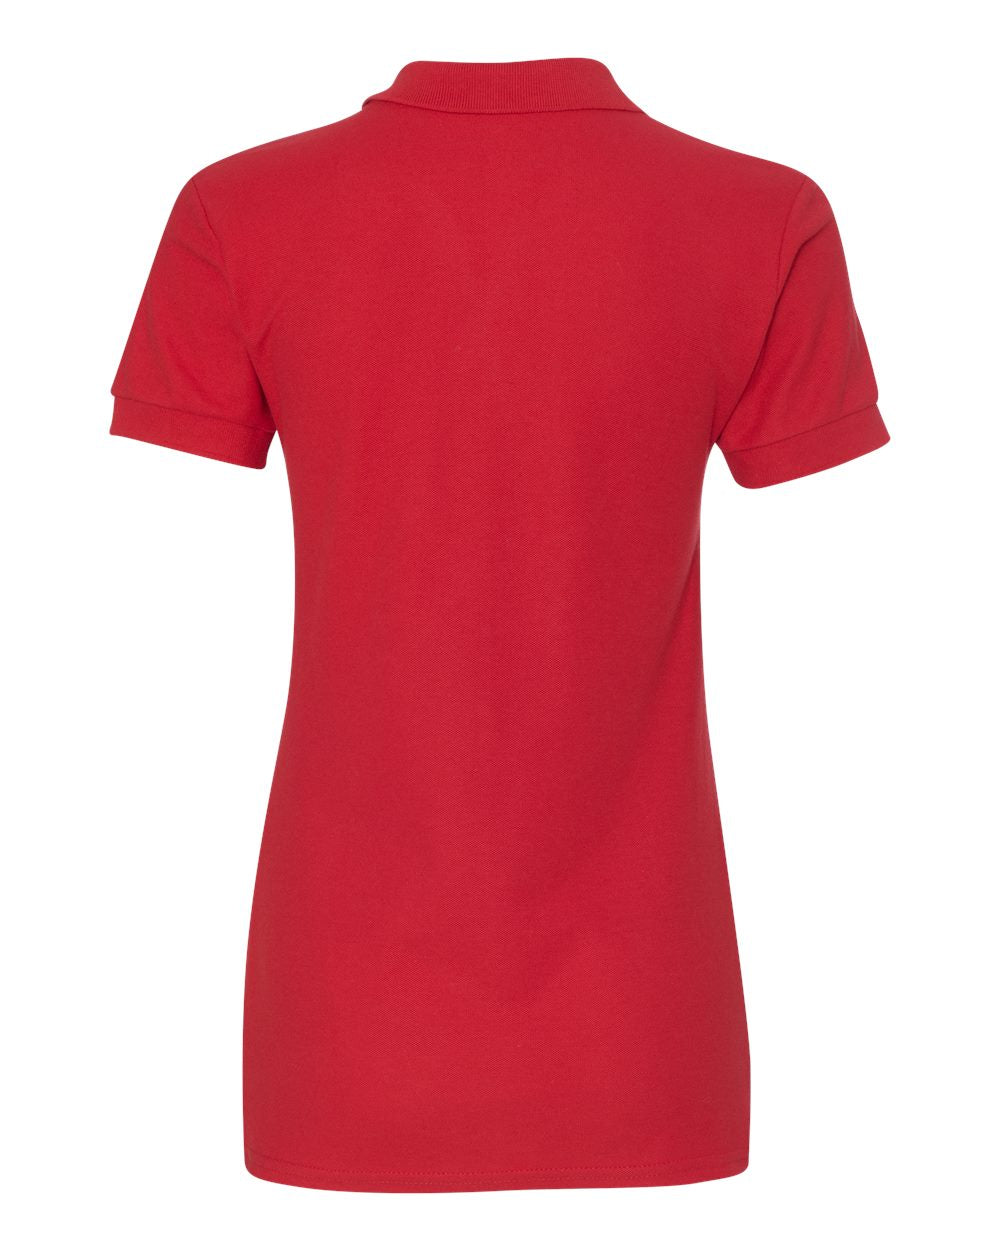 Gildan Premium Cotton® Women's Double Piqué Polo 82800L #color_Red